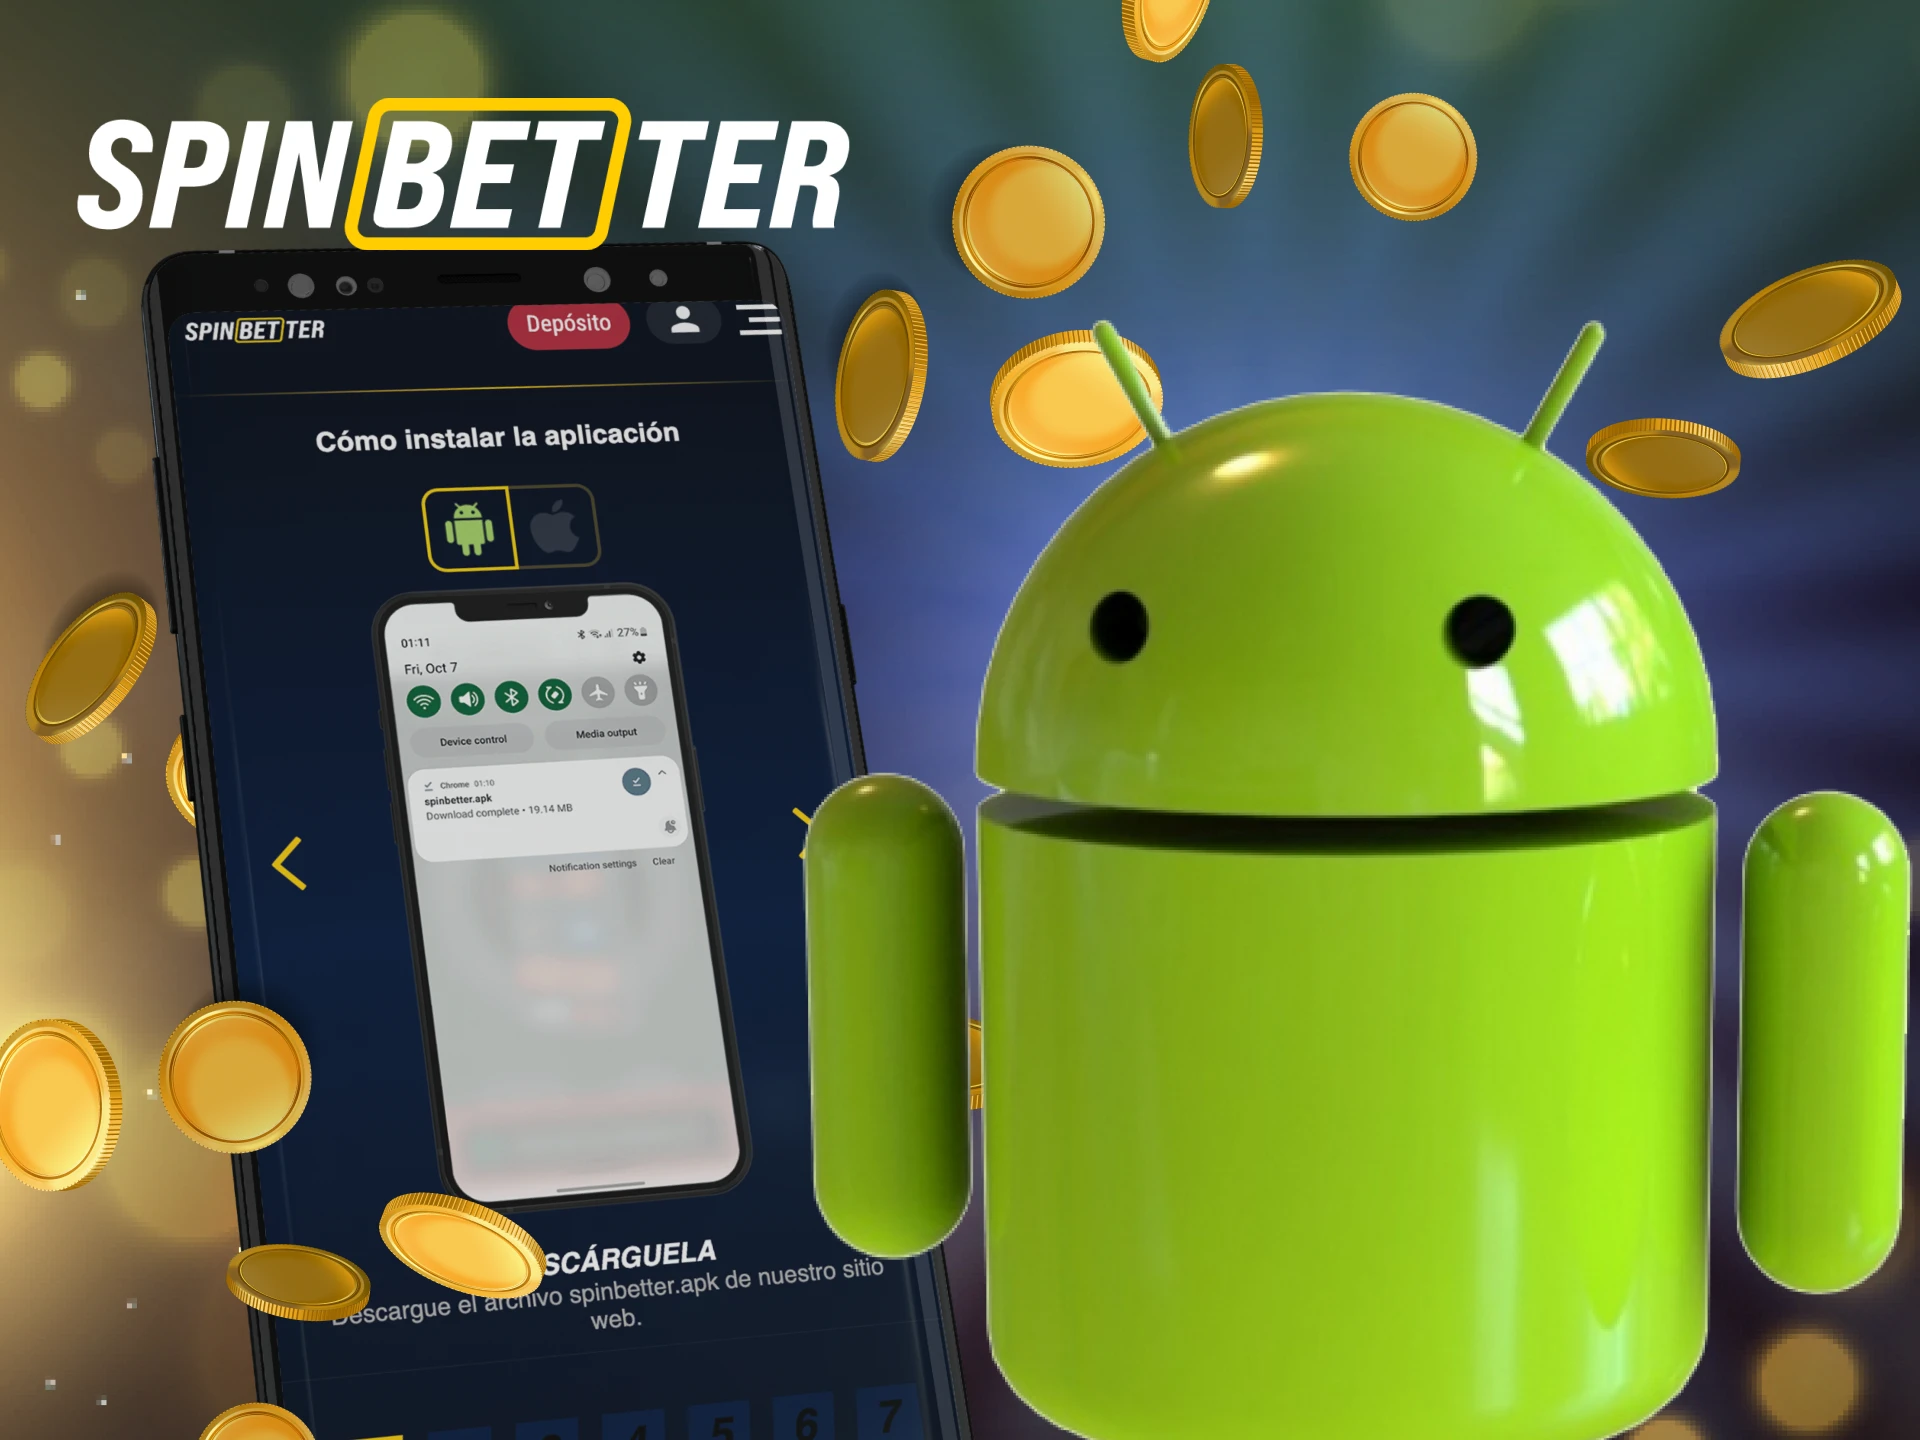 La aplicación Spinbetter tiene una versión para teléfonos Android.